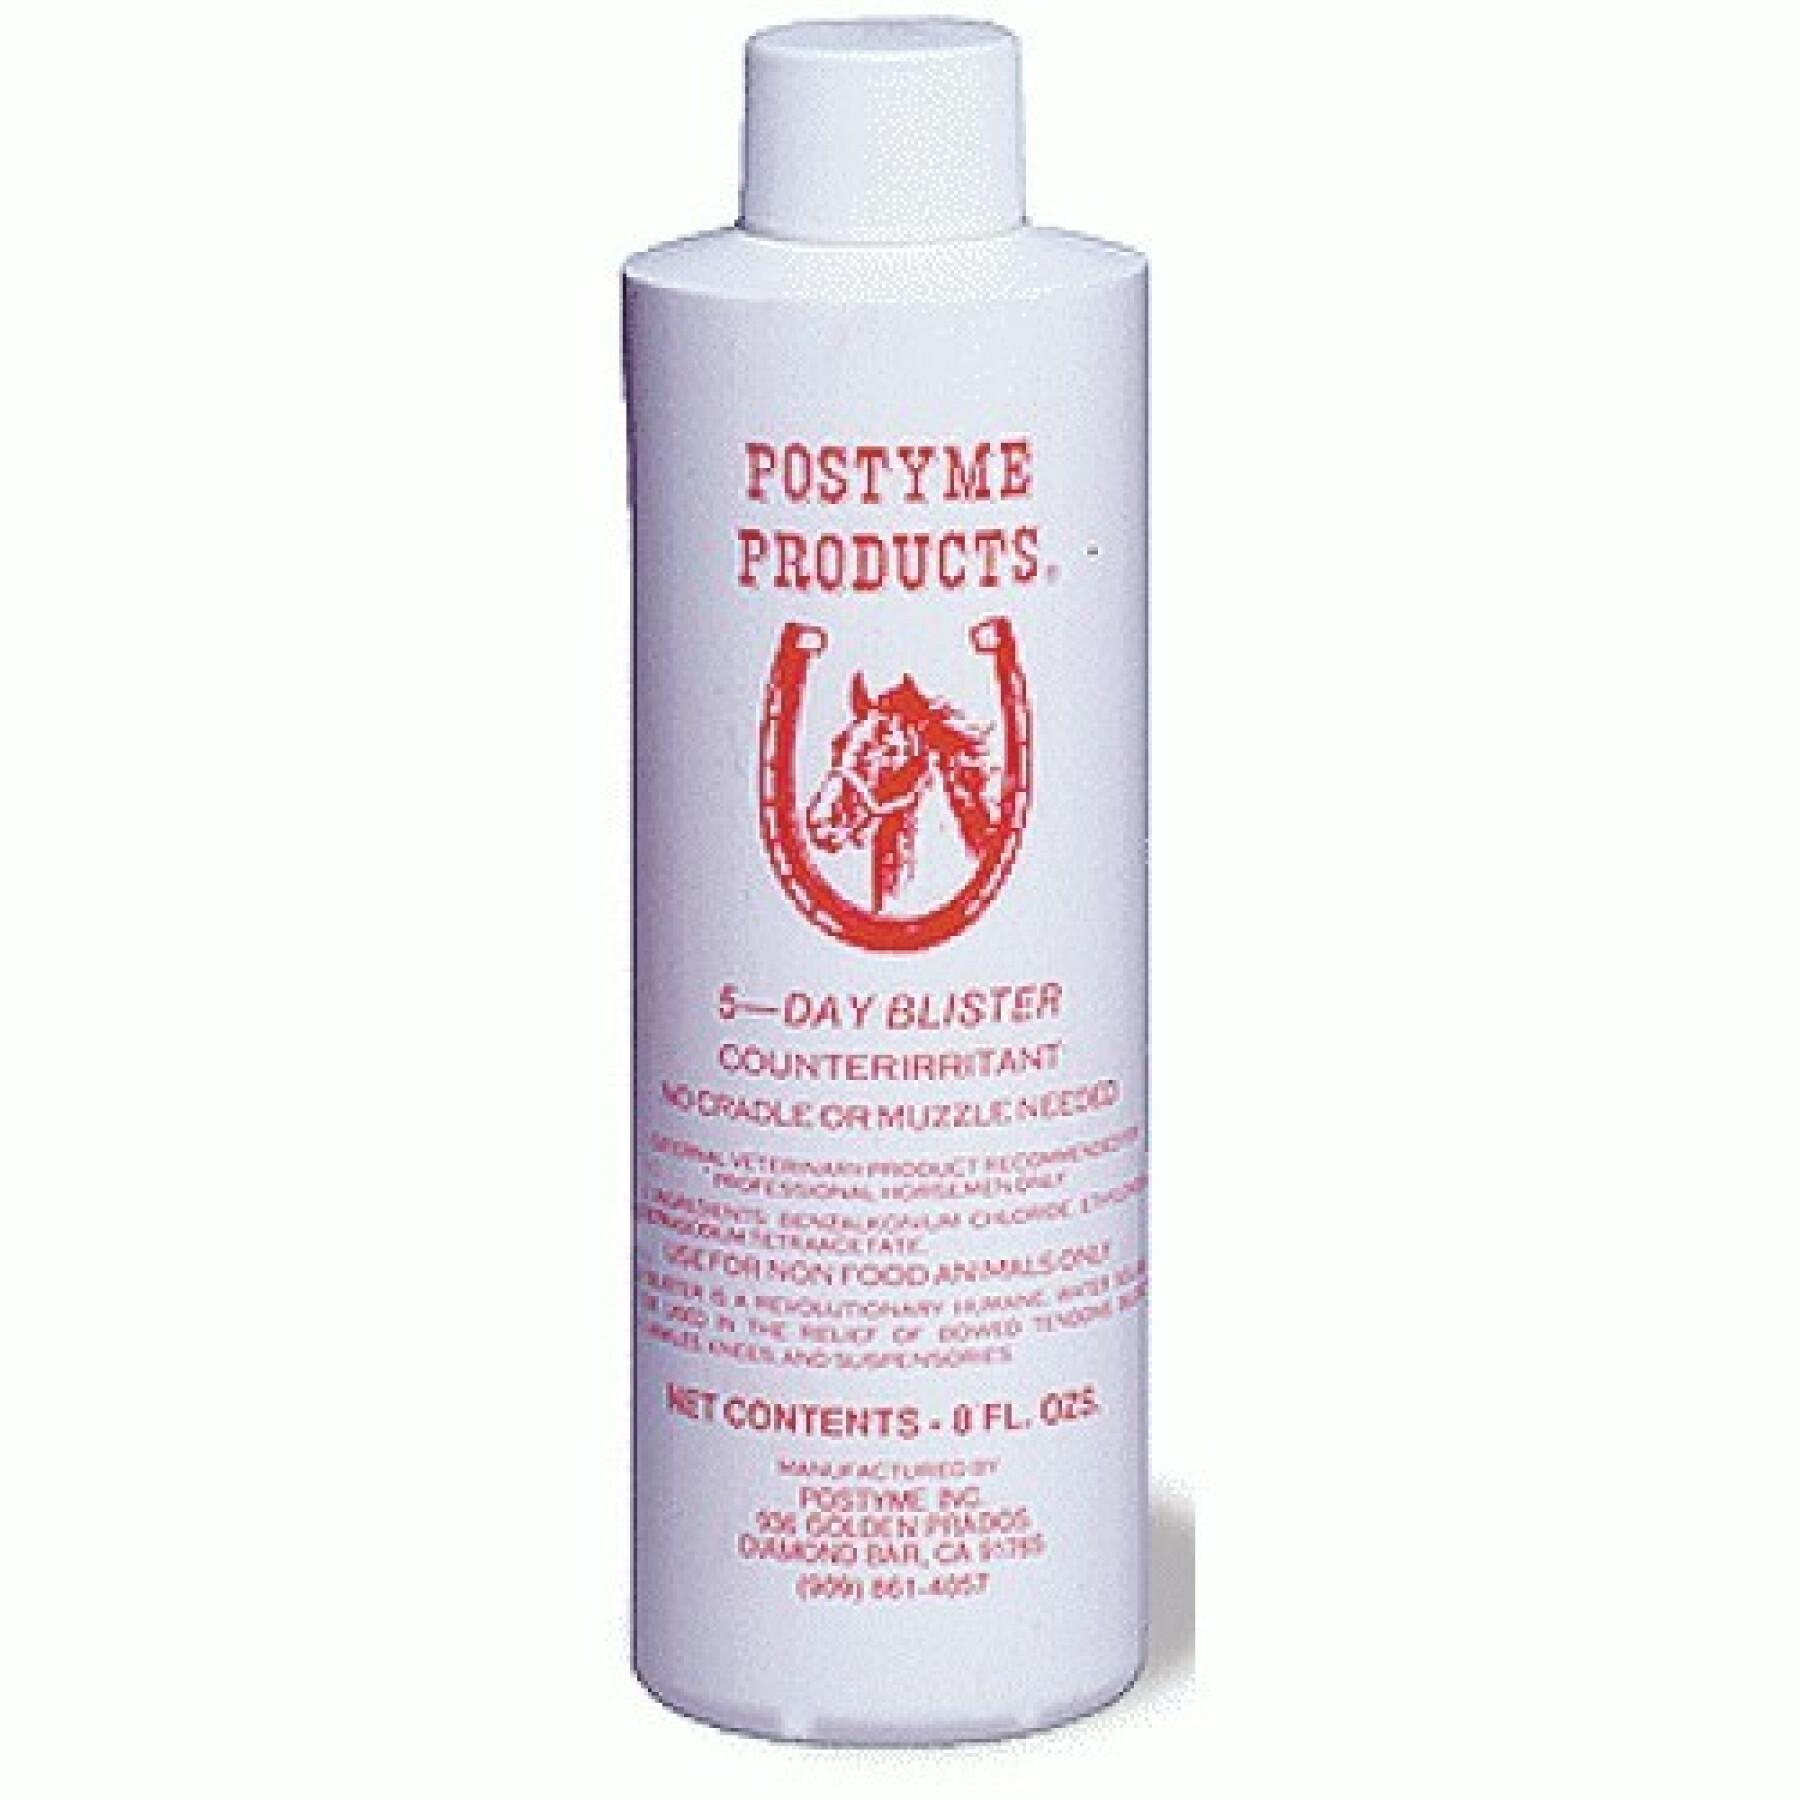 Verzorging van de ledematen van het paard Postyme Products Five Day Blister 236 ml